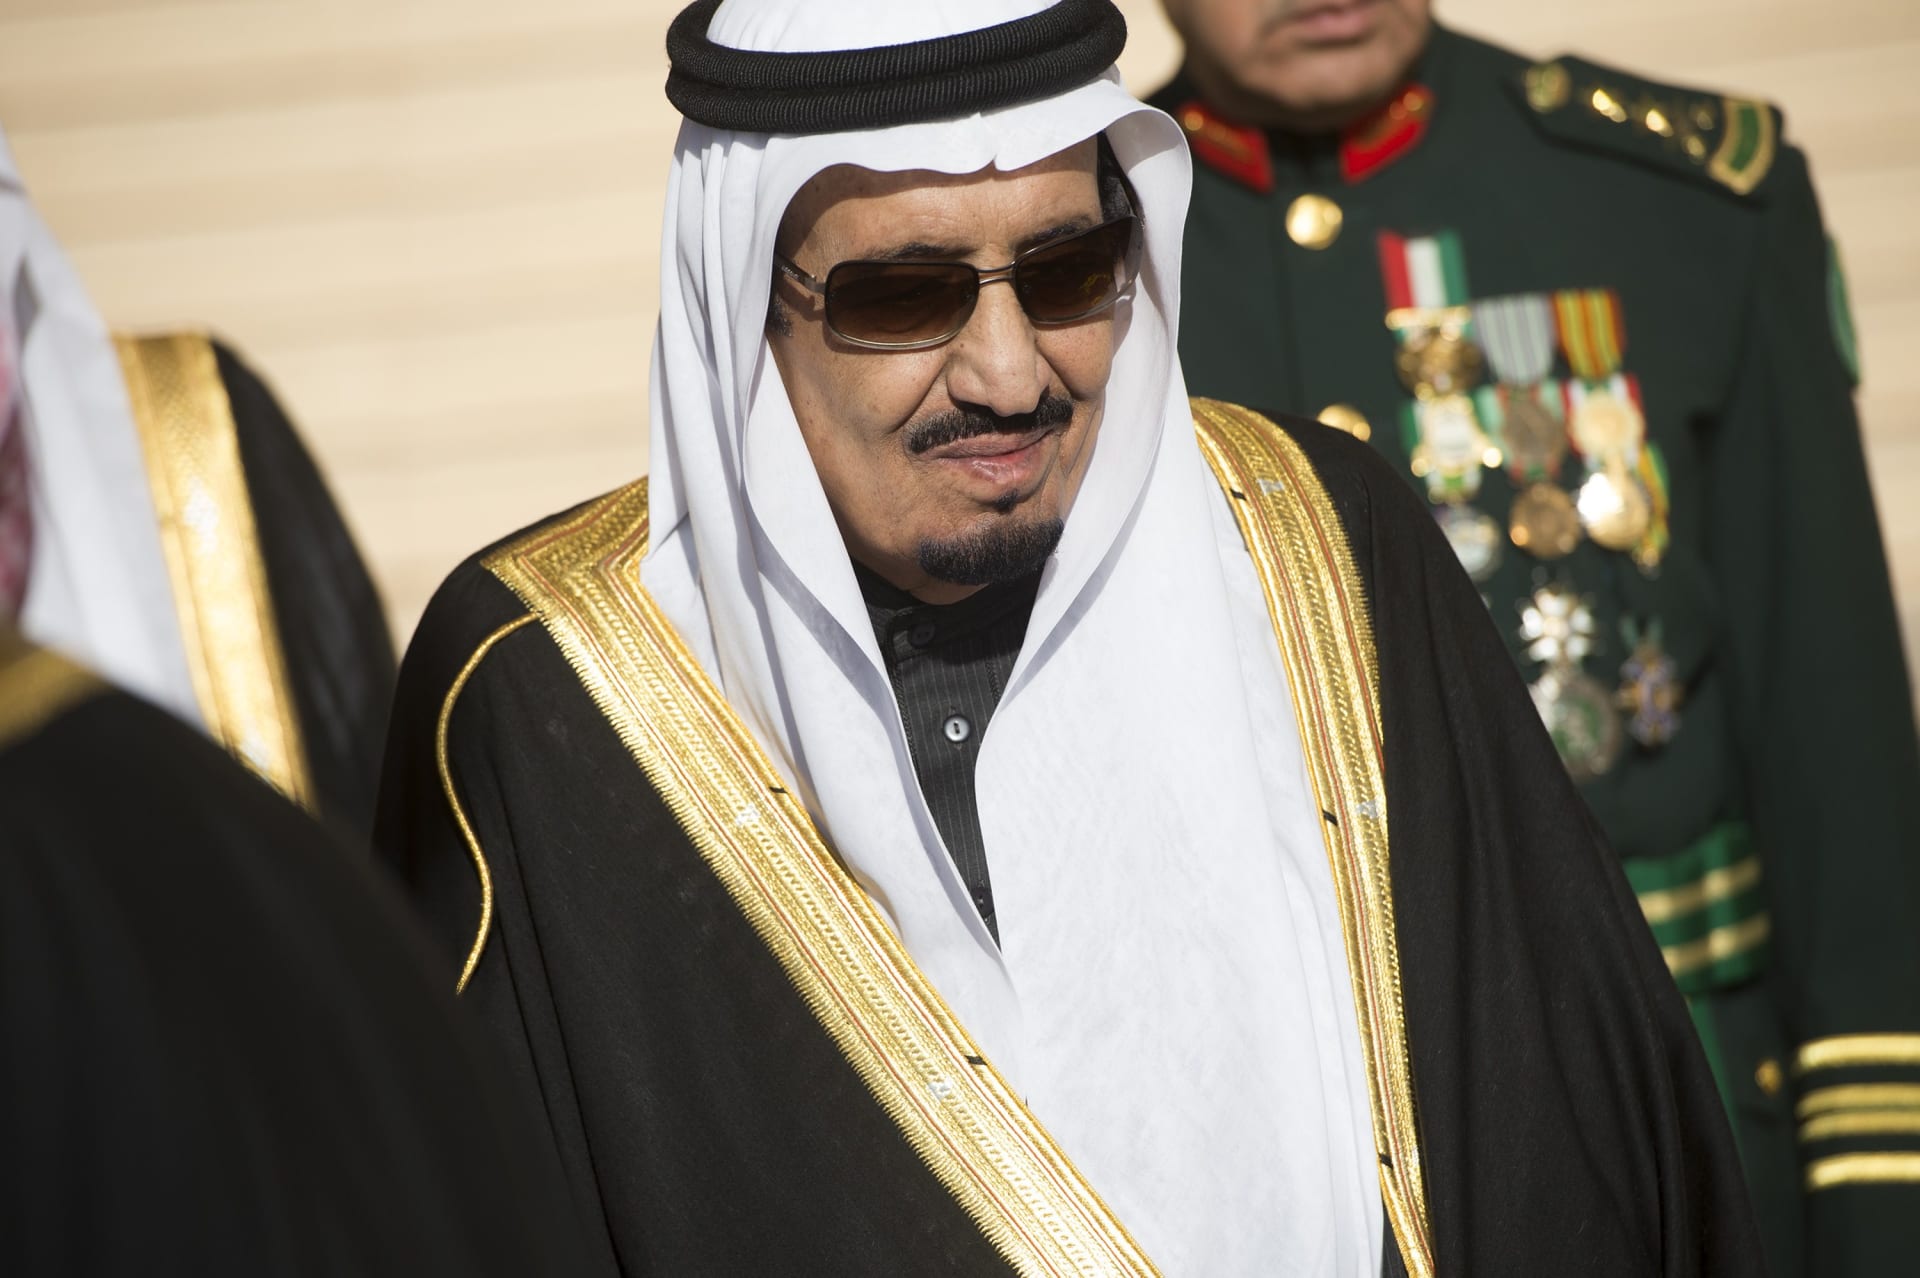 بعد منحه الجنسية السعودية.. الحسيني يمتدح الملك سلمان: أمير البلاغة